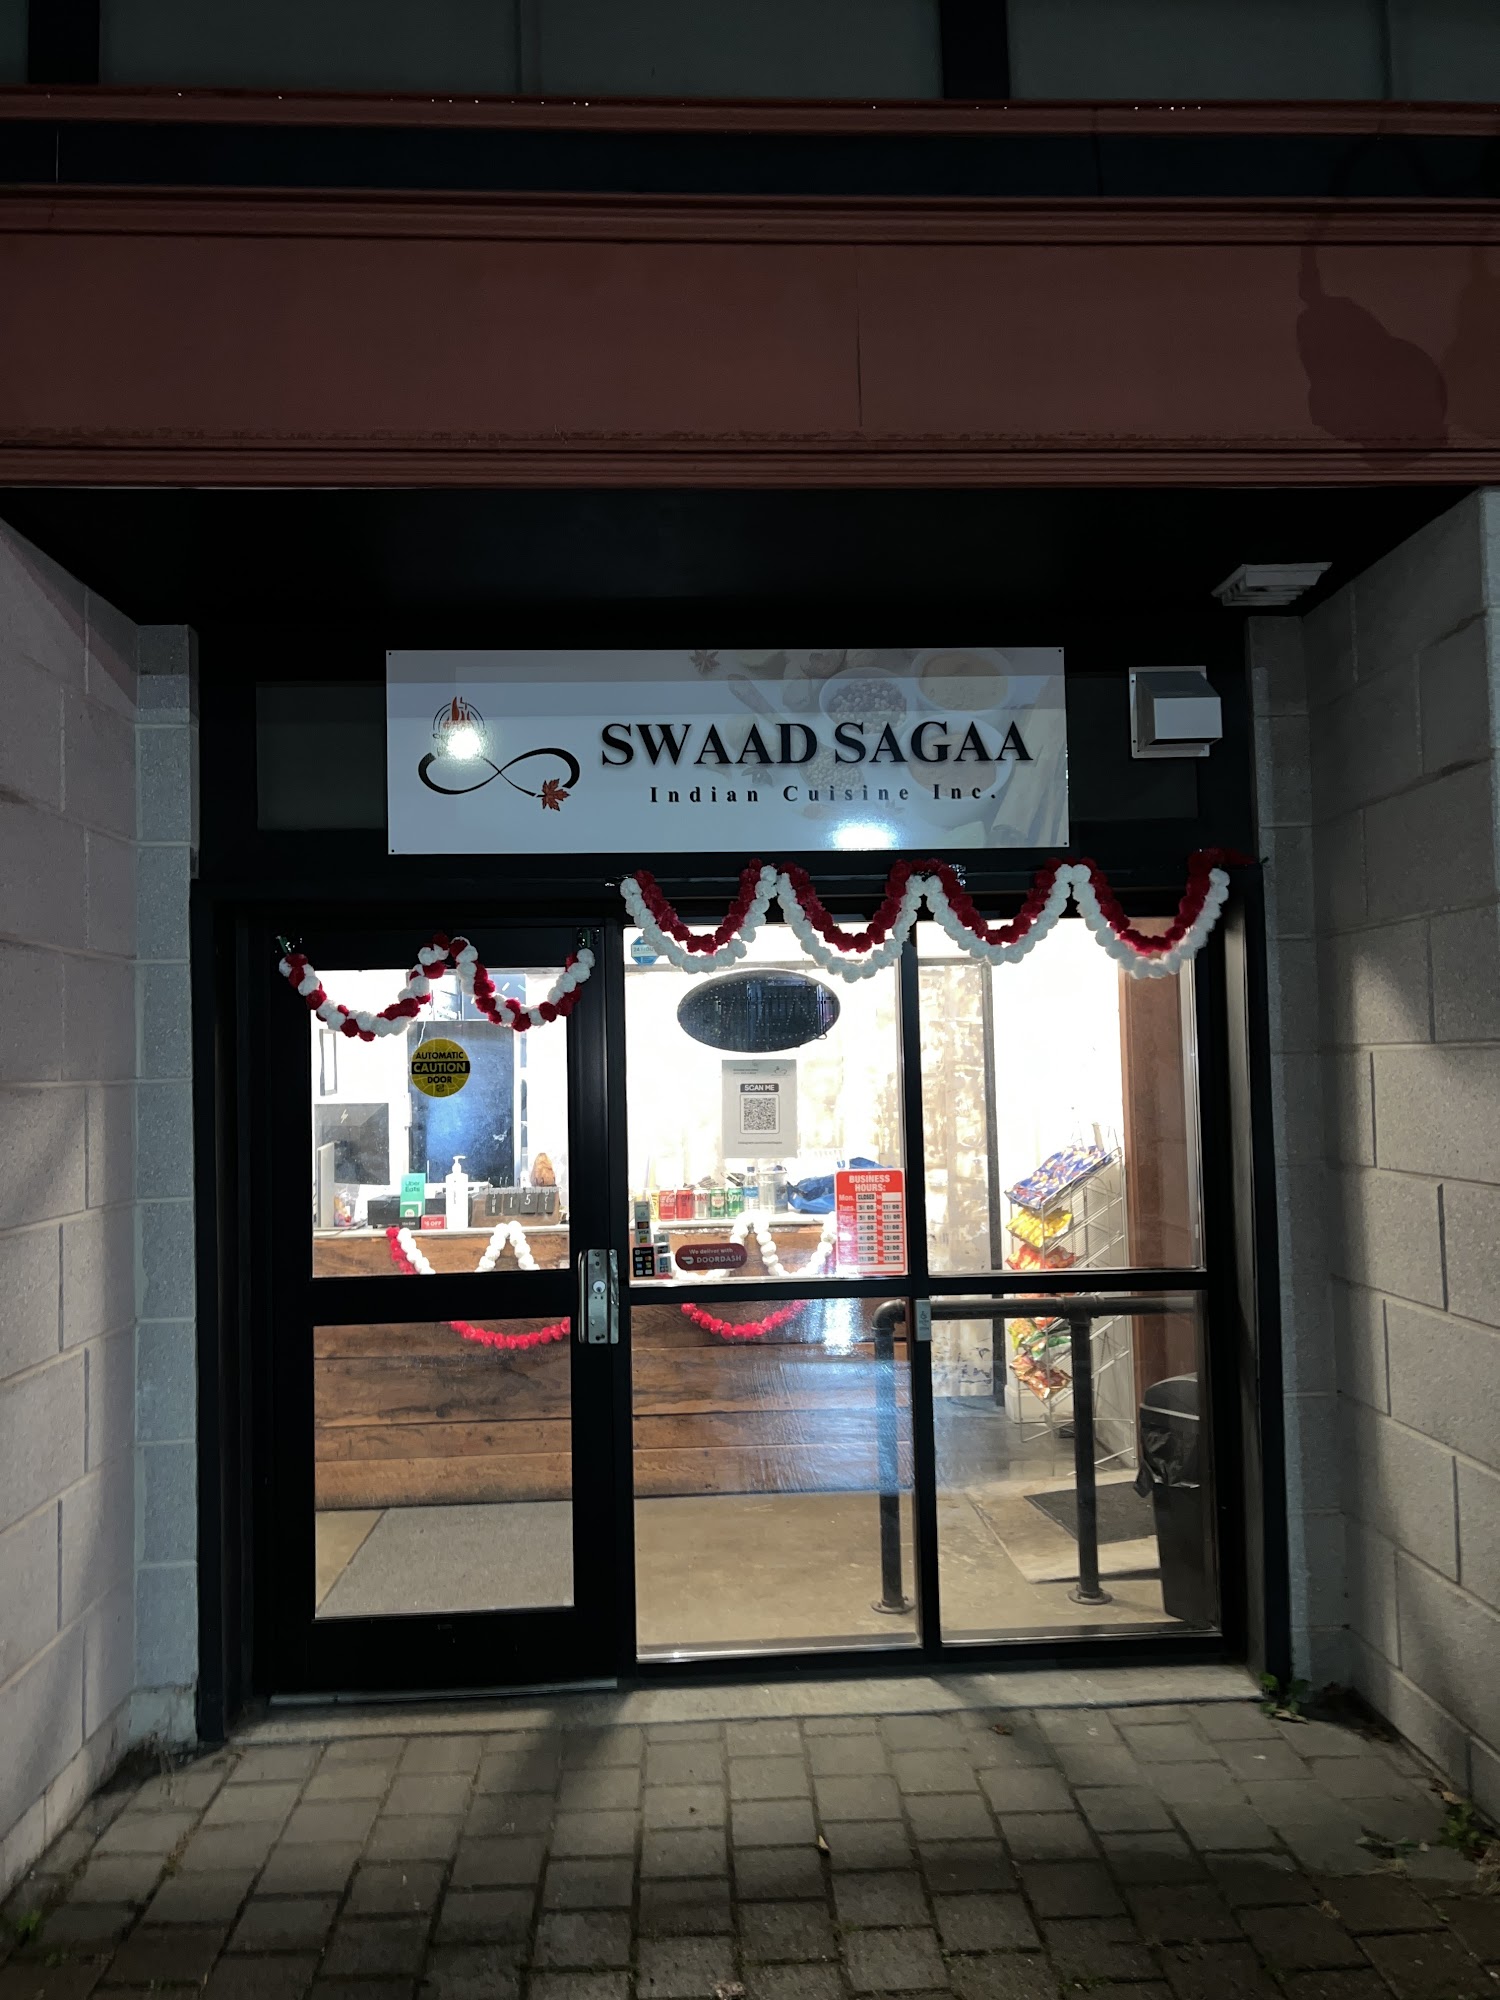 Swaad Sagaa Indian Cuisine Inc.